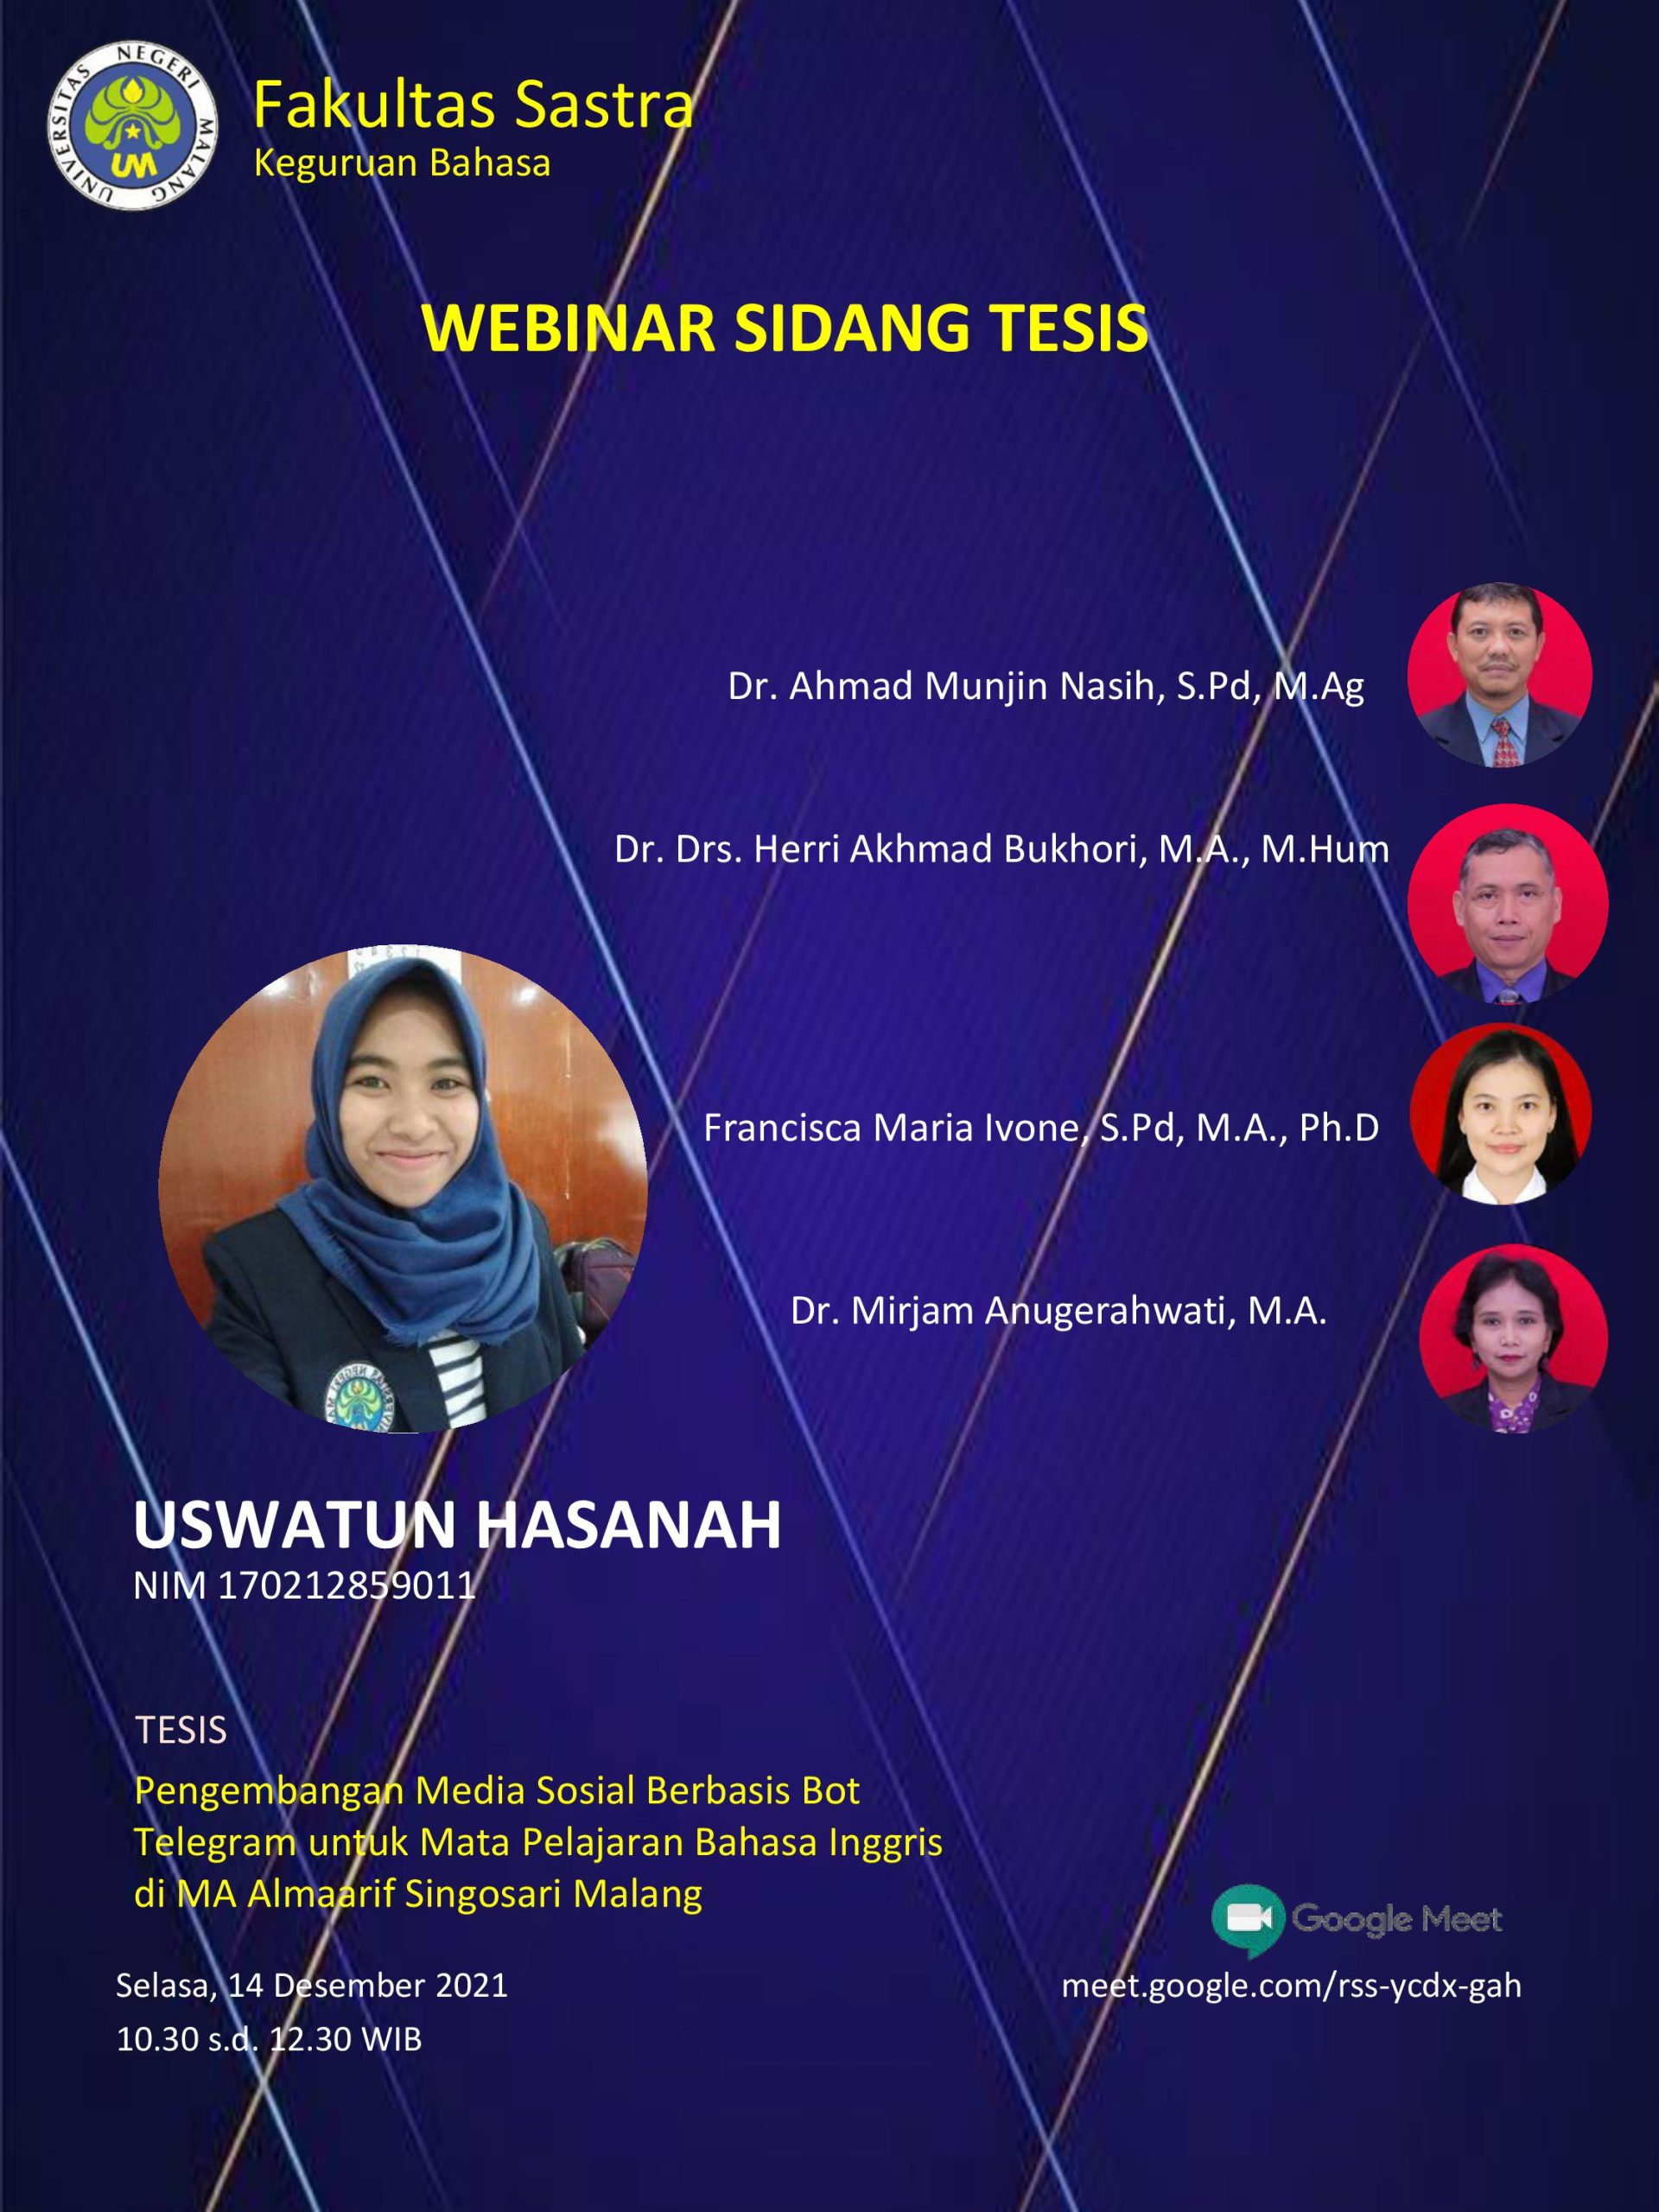 Ujian Tesis Program Magister Program Studi Keguruan Bahasa a.n. Uswatun Hasanah